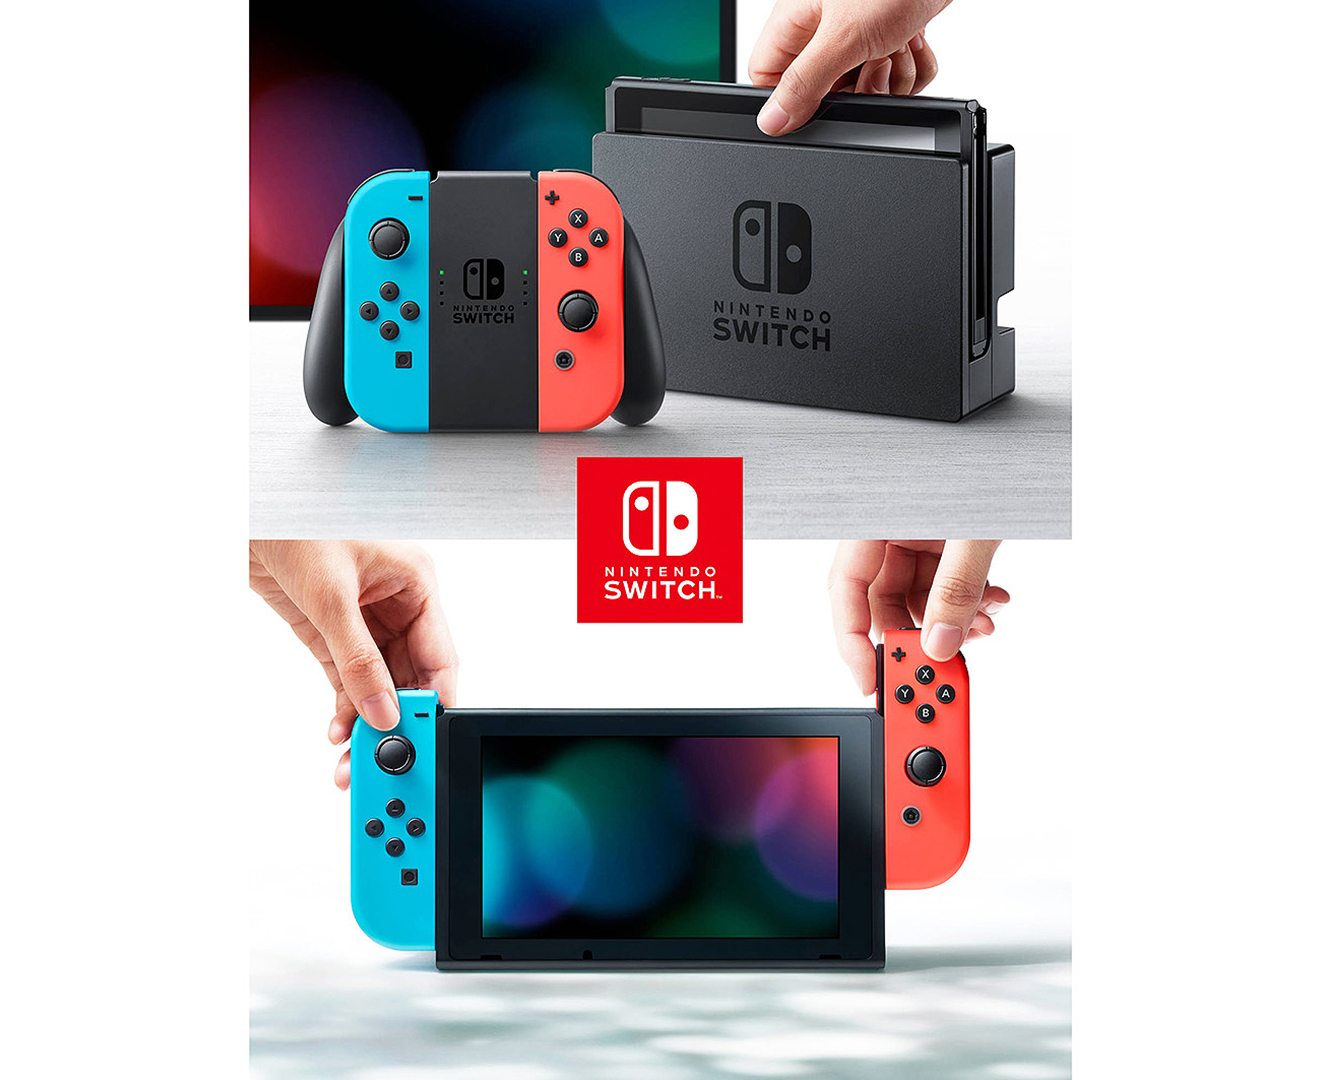 Nintendo switch последняя версия. Игровая консоль Nintendo Switch. Нинтендо свитч комплектация. Nintendo Switch 32 GB. Нинтендо свитч серая консоль.